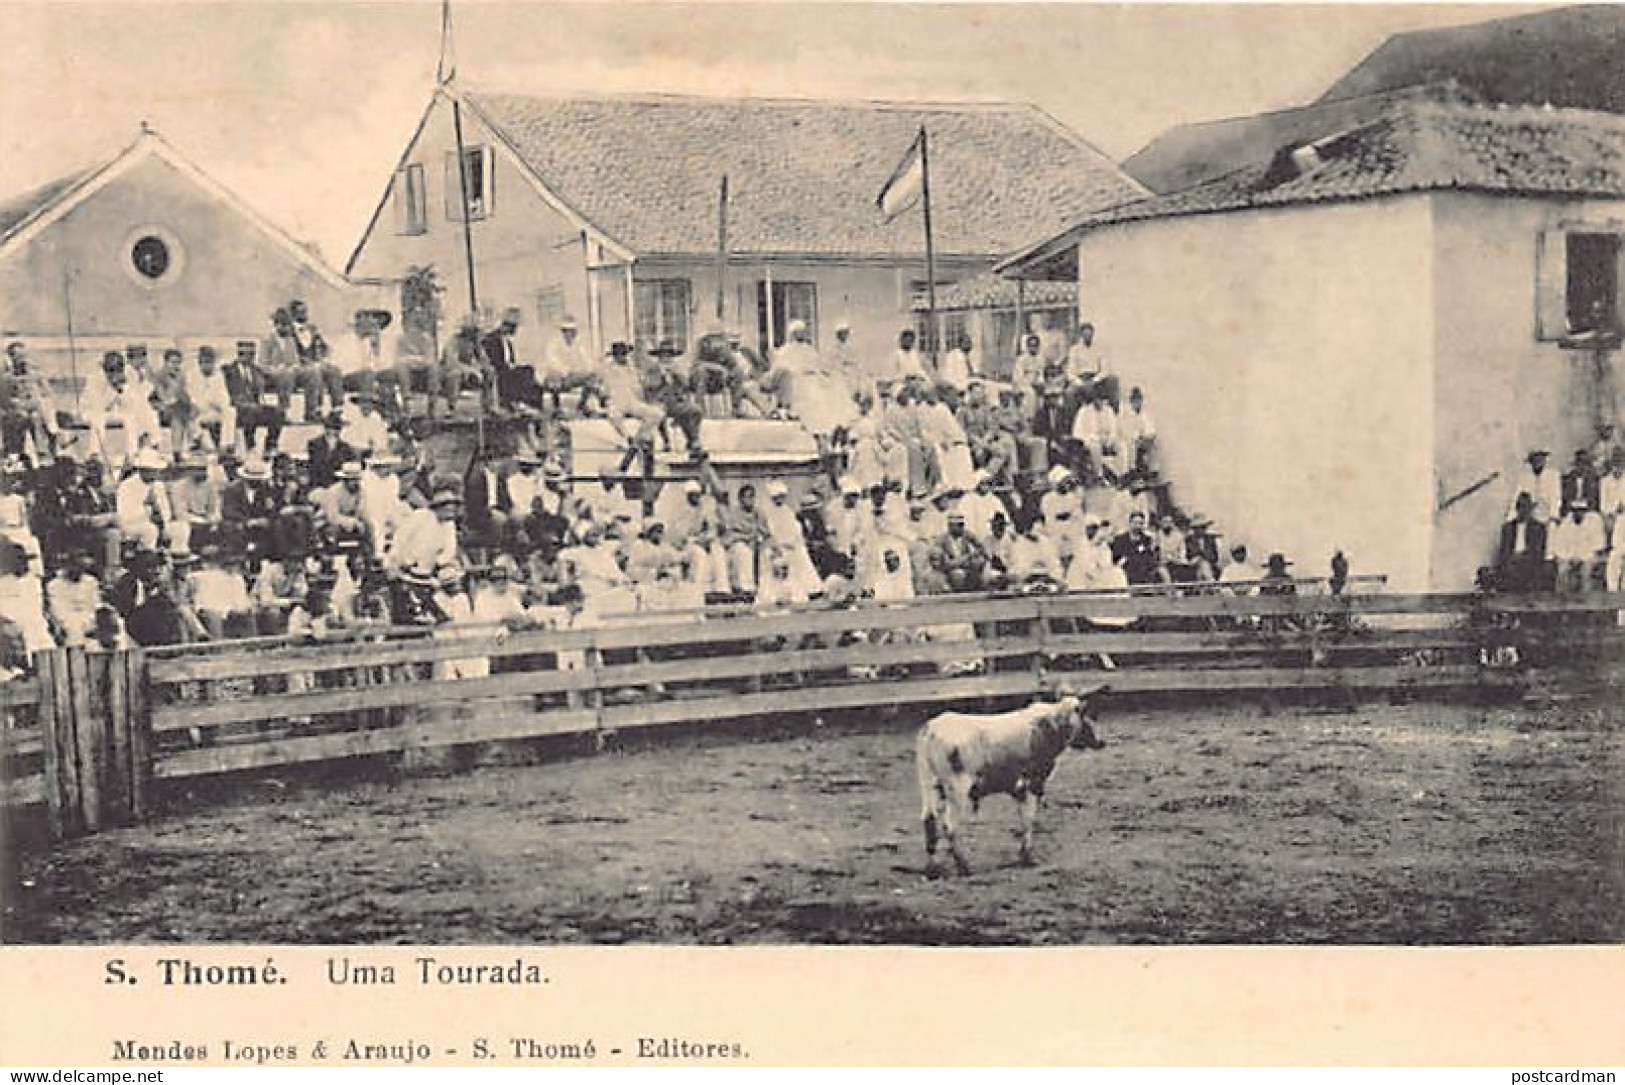 SAO TOME - Uma Tourada - Bullfight - Publ. Mendes. - São Tomé Und Príncipe